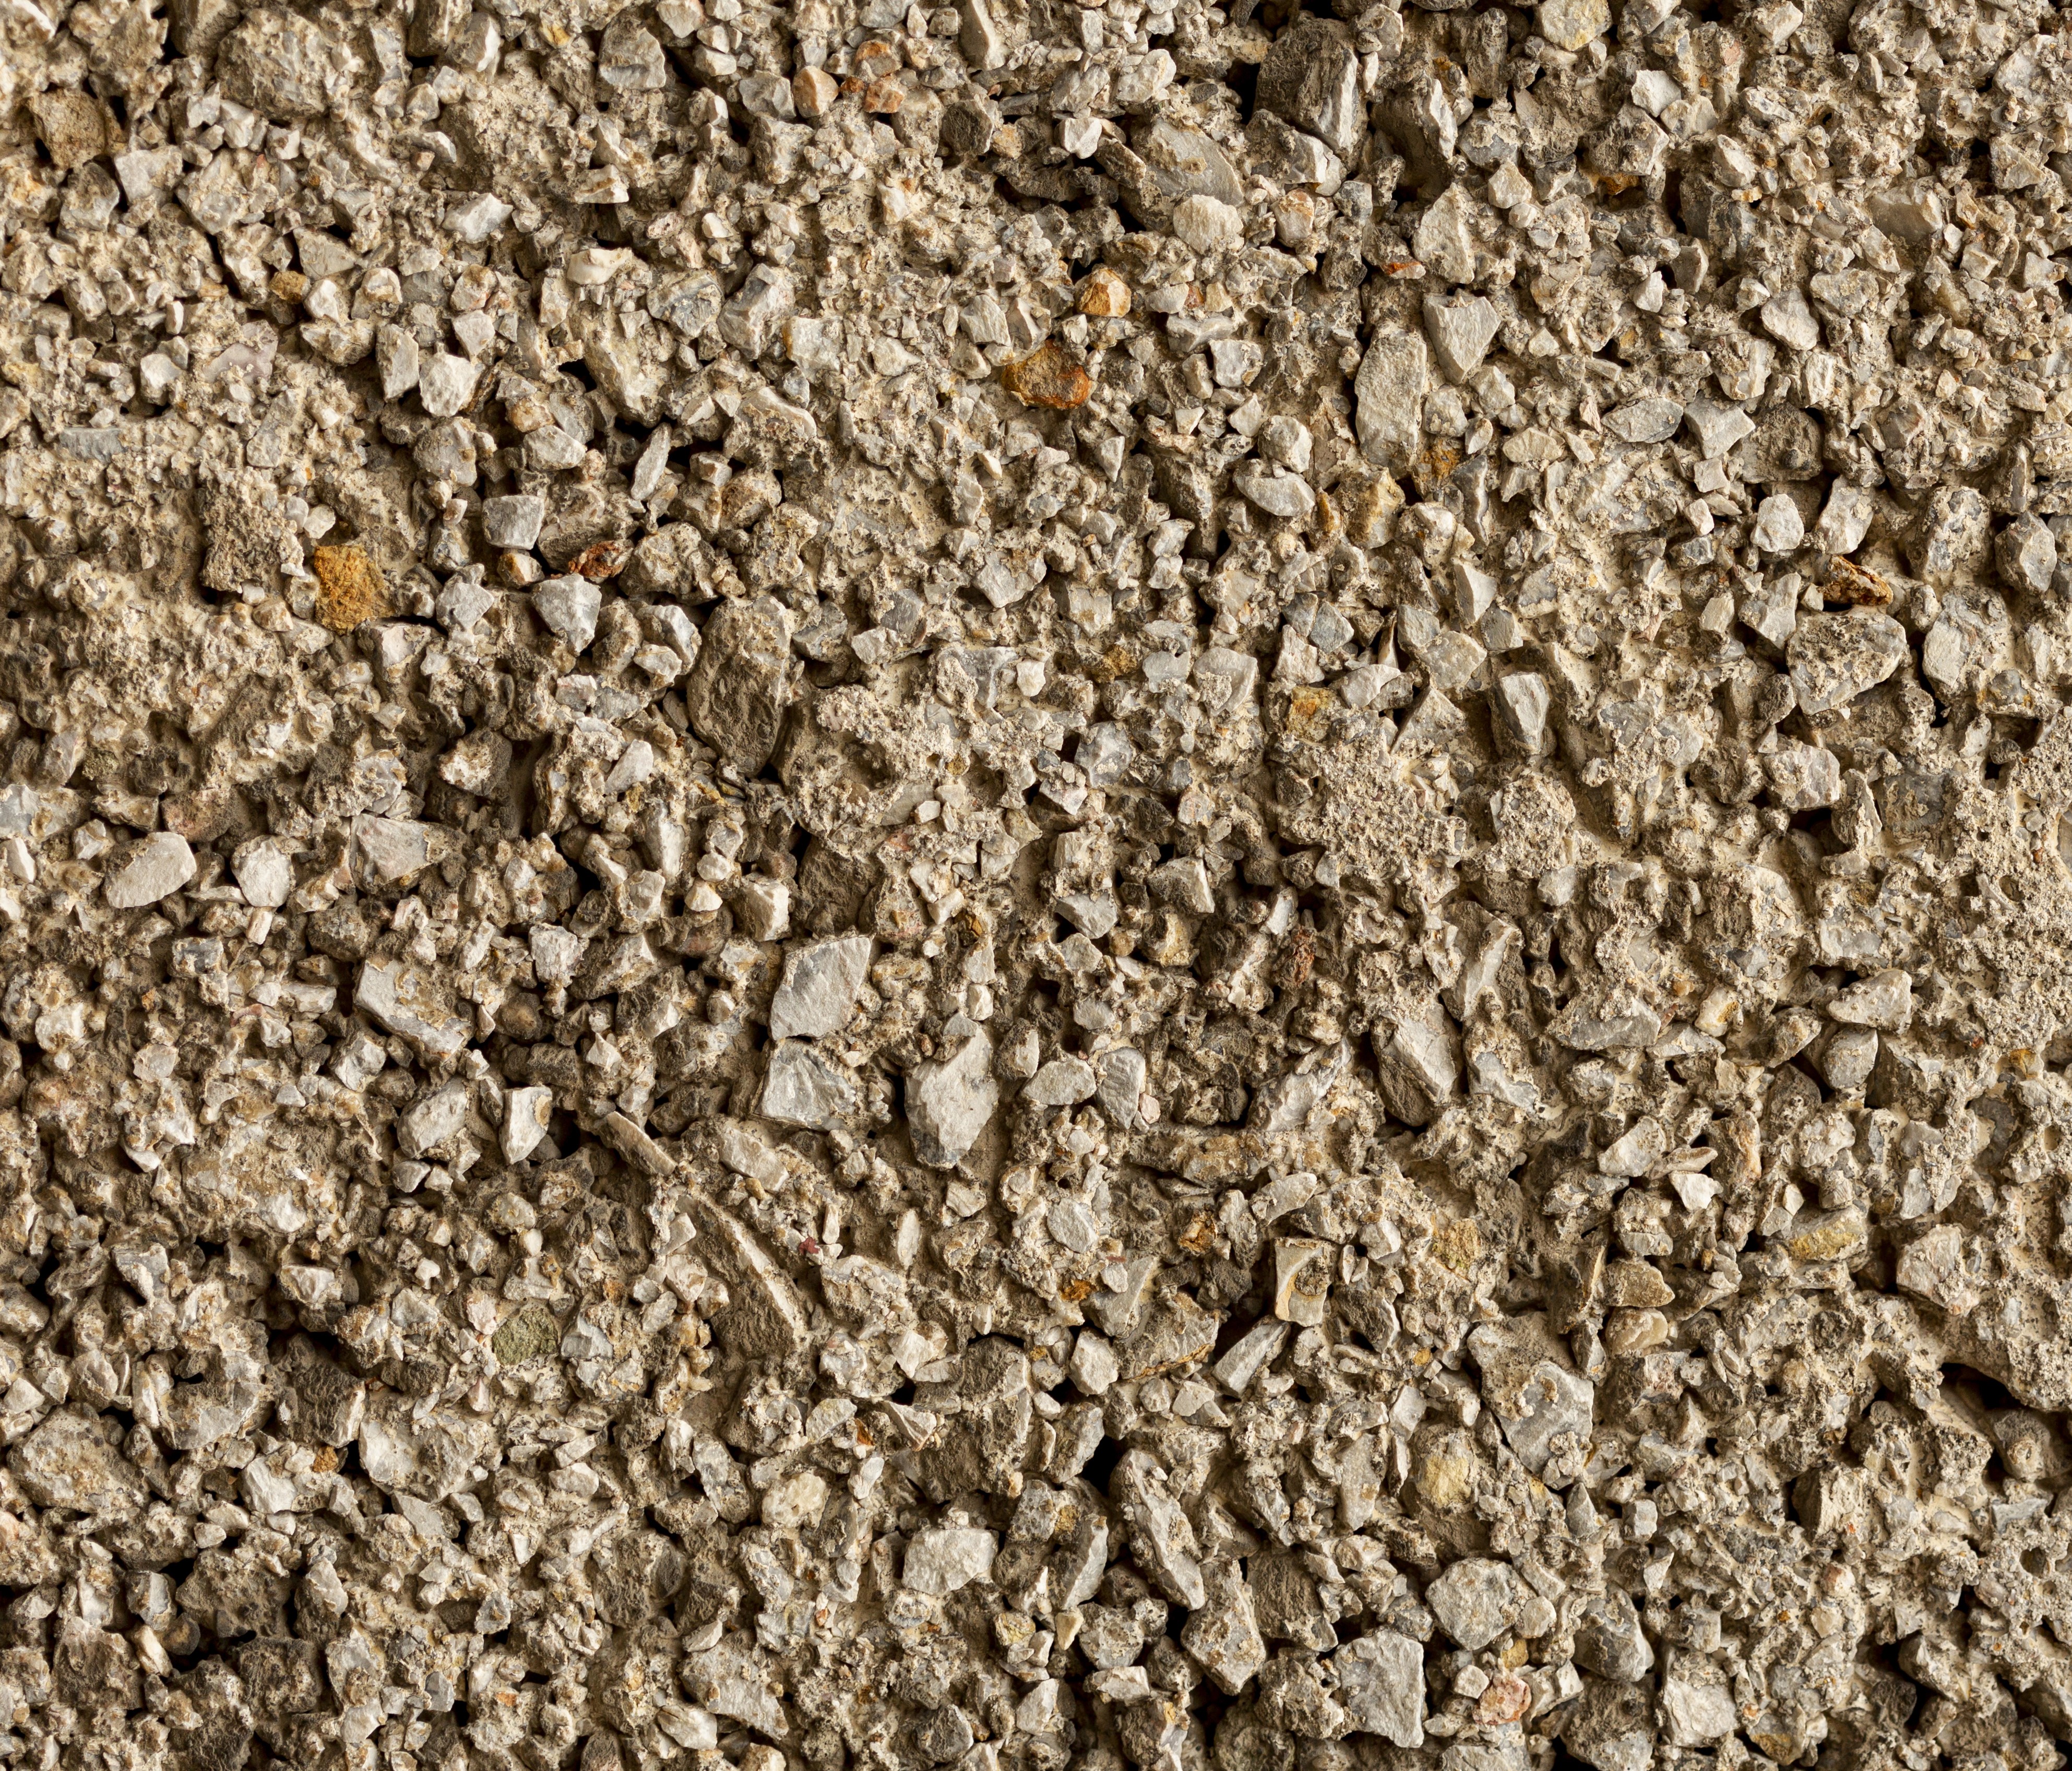  Характеристика и применение песчано-гравийной смеси